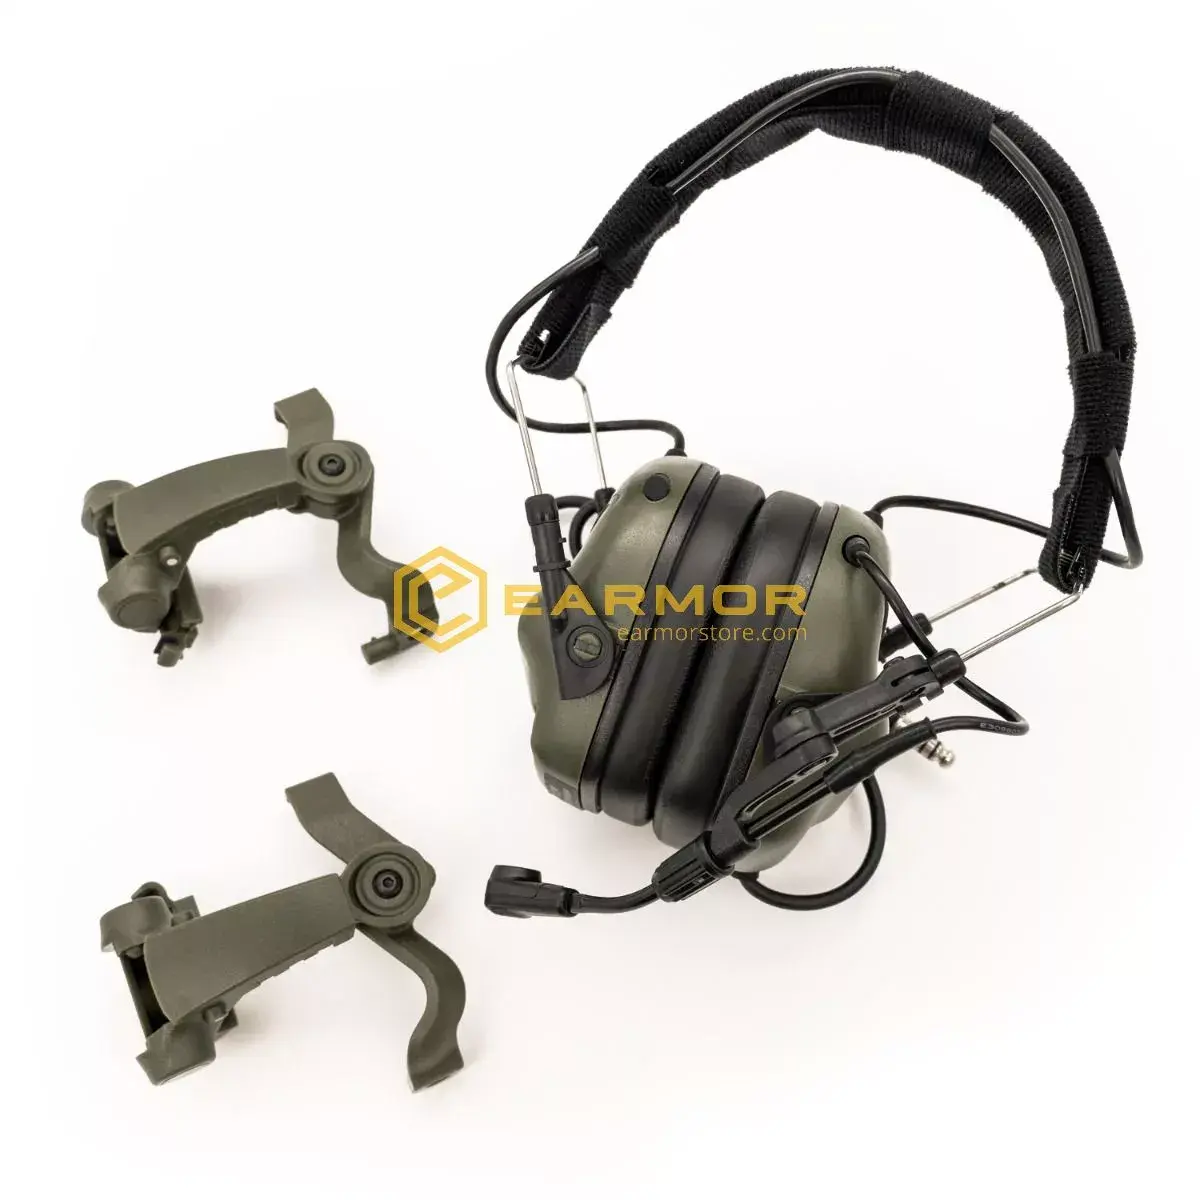 OPSMEN Earmor M32X FG Professioneller elektronischer Ohrenschützer, Laubgrün